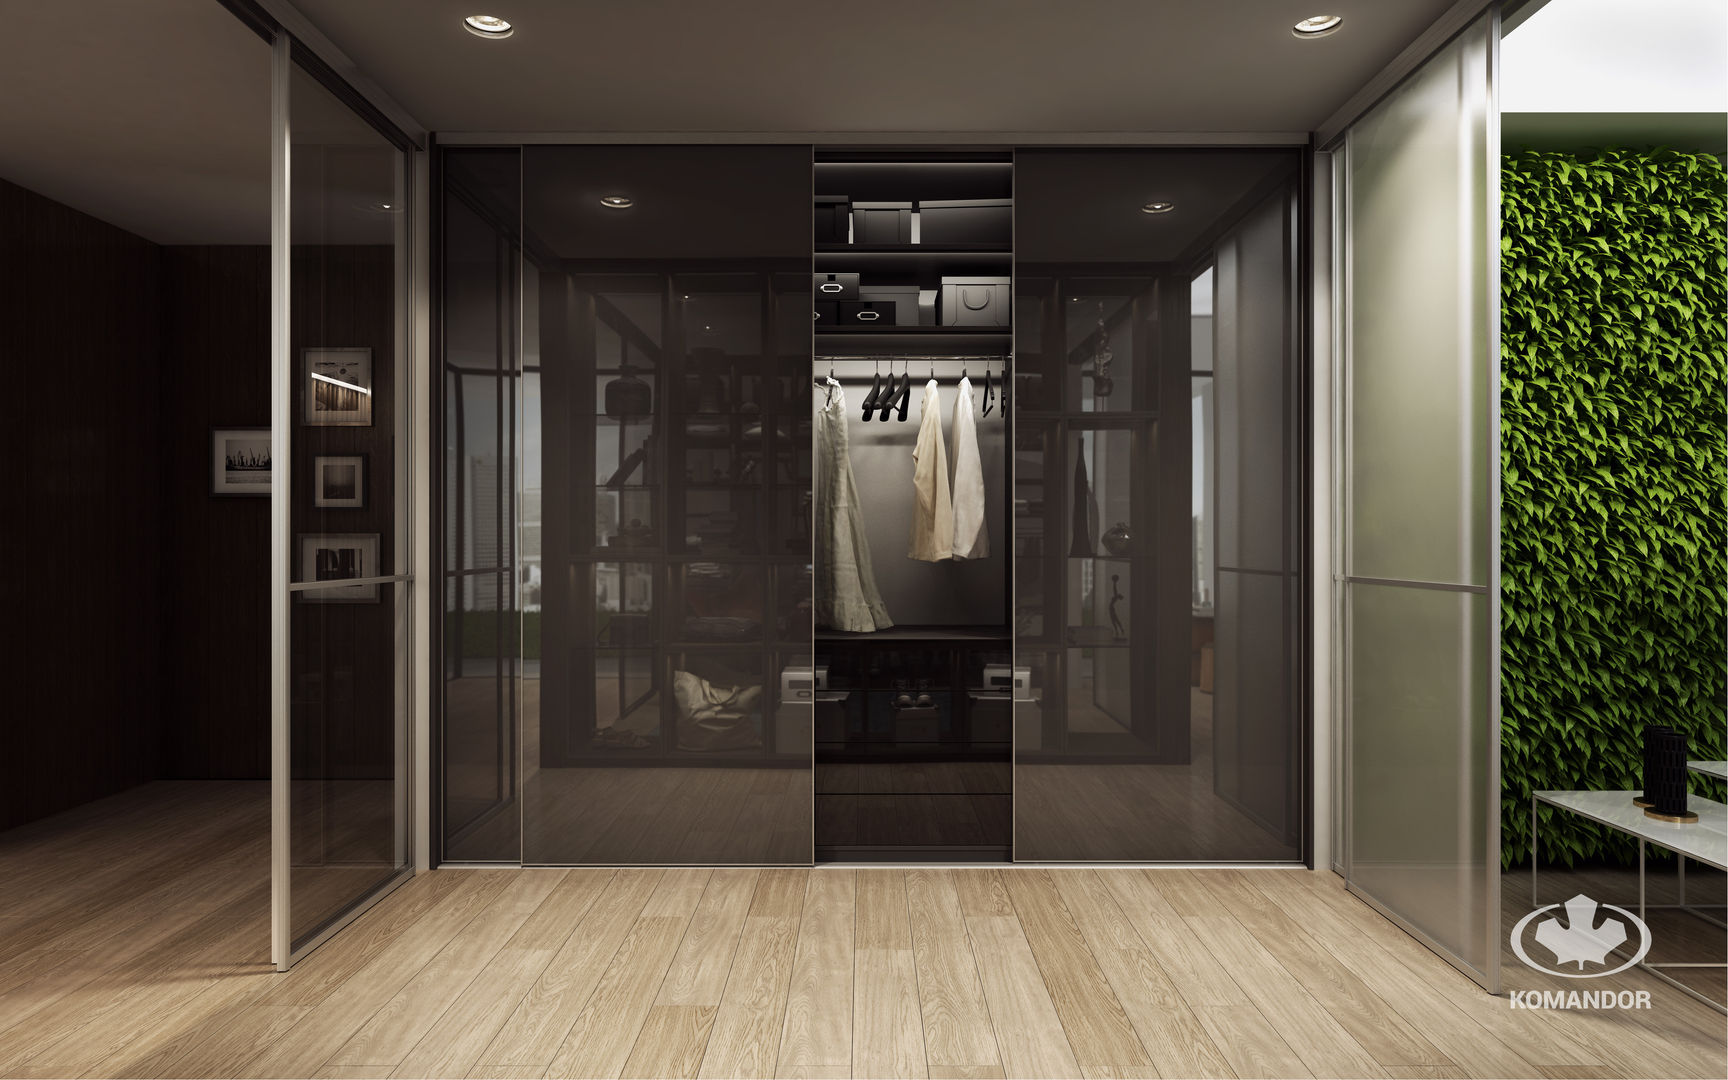 Sypialnia połączona z garderobą, Komandor - Wnętrza z charakterem Komandor - Wnętrza z charakterem Modern dressing room Glass